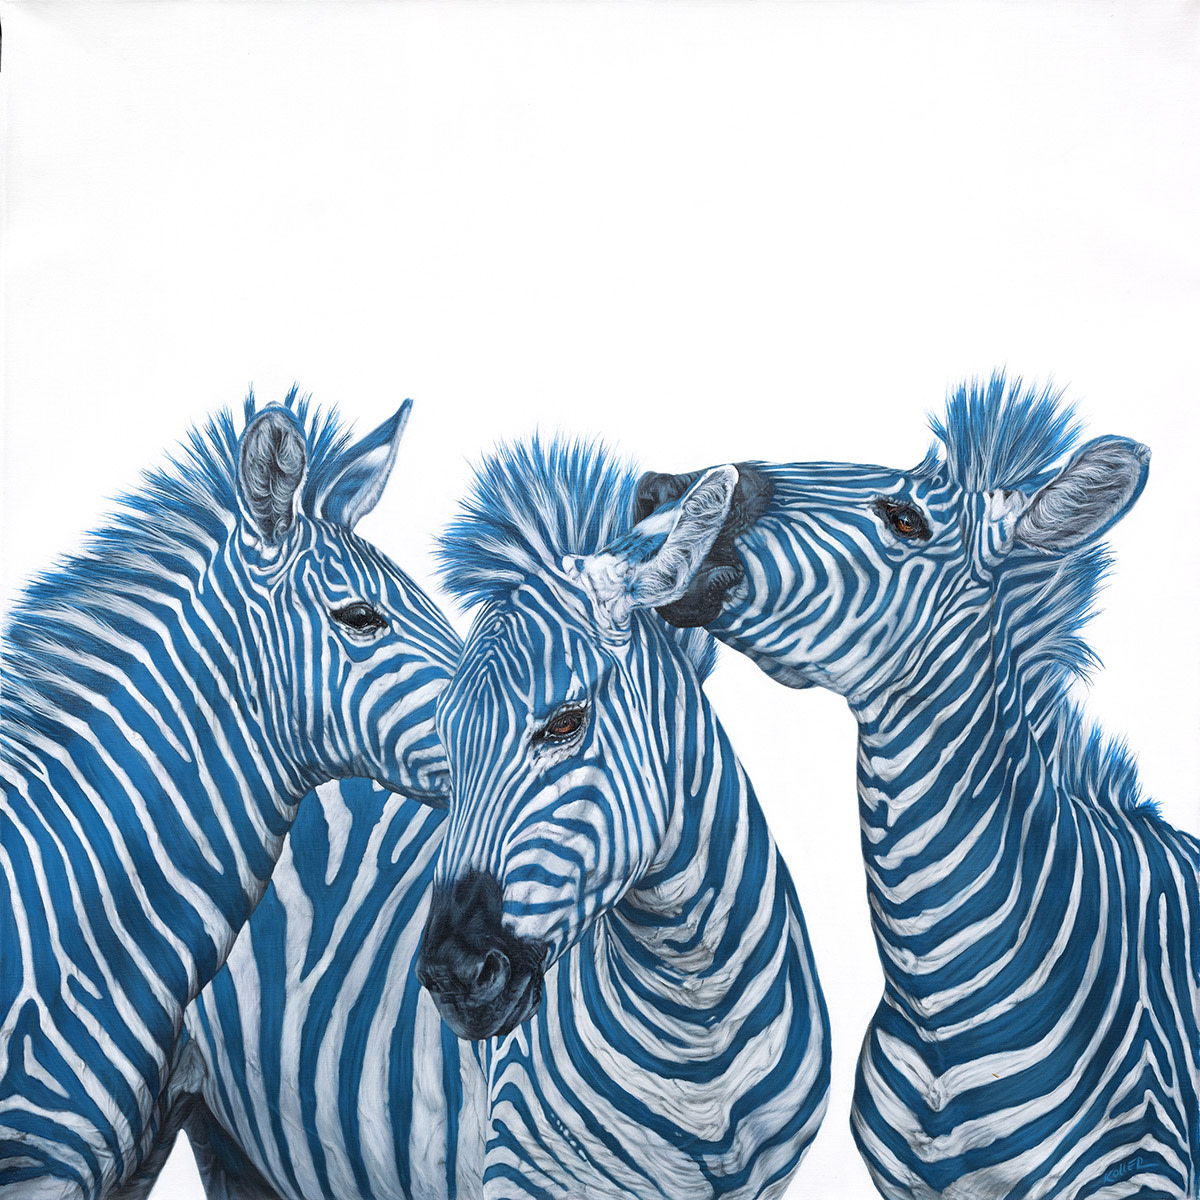 THREE BLUE ZEBRAS, 2015 by HELMUT KOLLER 